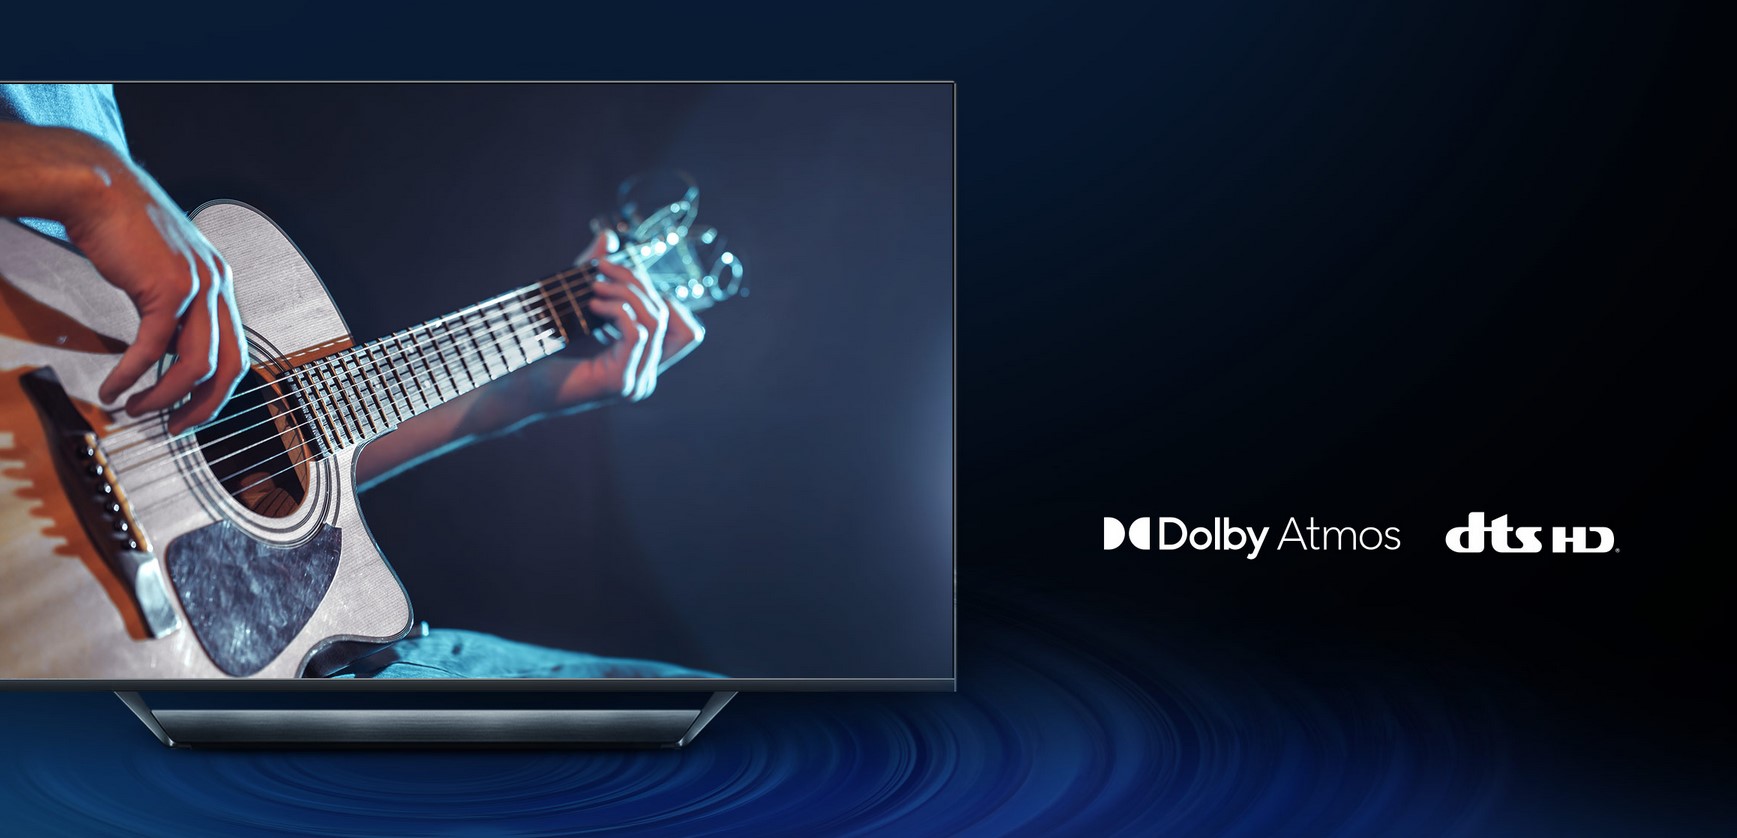 Üstün ses deneyimi için çevresel ses* Müzik, oyun, film veya TV dizileri fark etmeksizin ilgi alanınız ne olursa olsun Dolby Atmos® ve DTS HD teknolojisinin eklenmesi, seslere her zamankinden daha fazla zenginlik ve gerçeklik katar. 